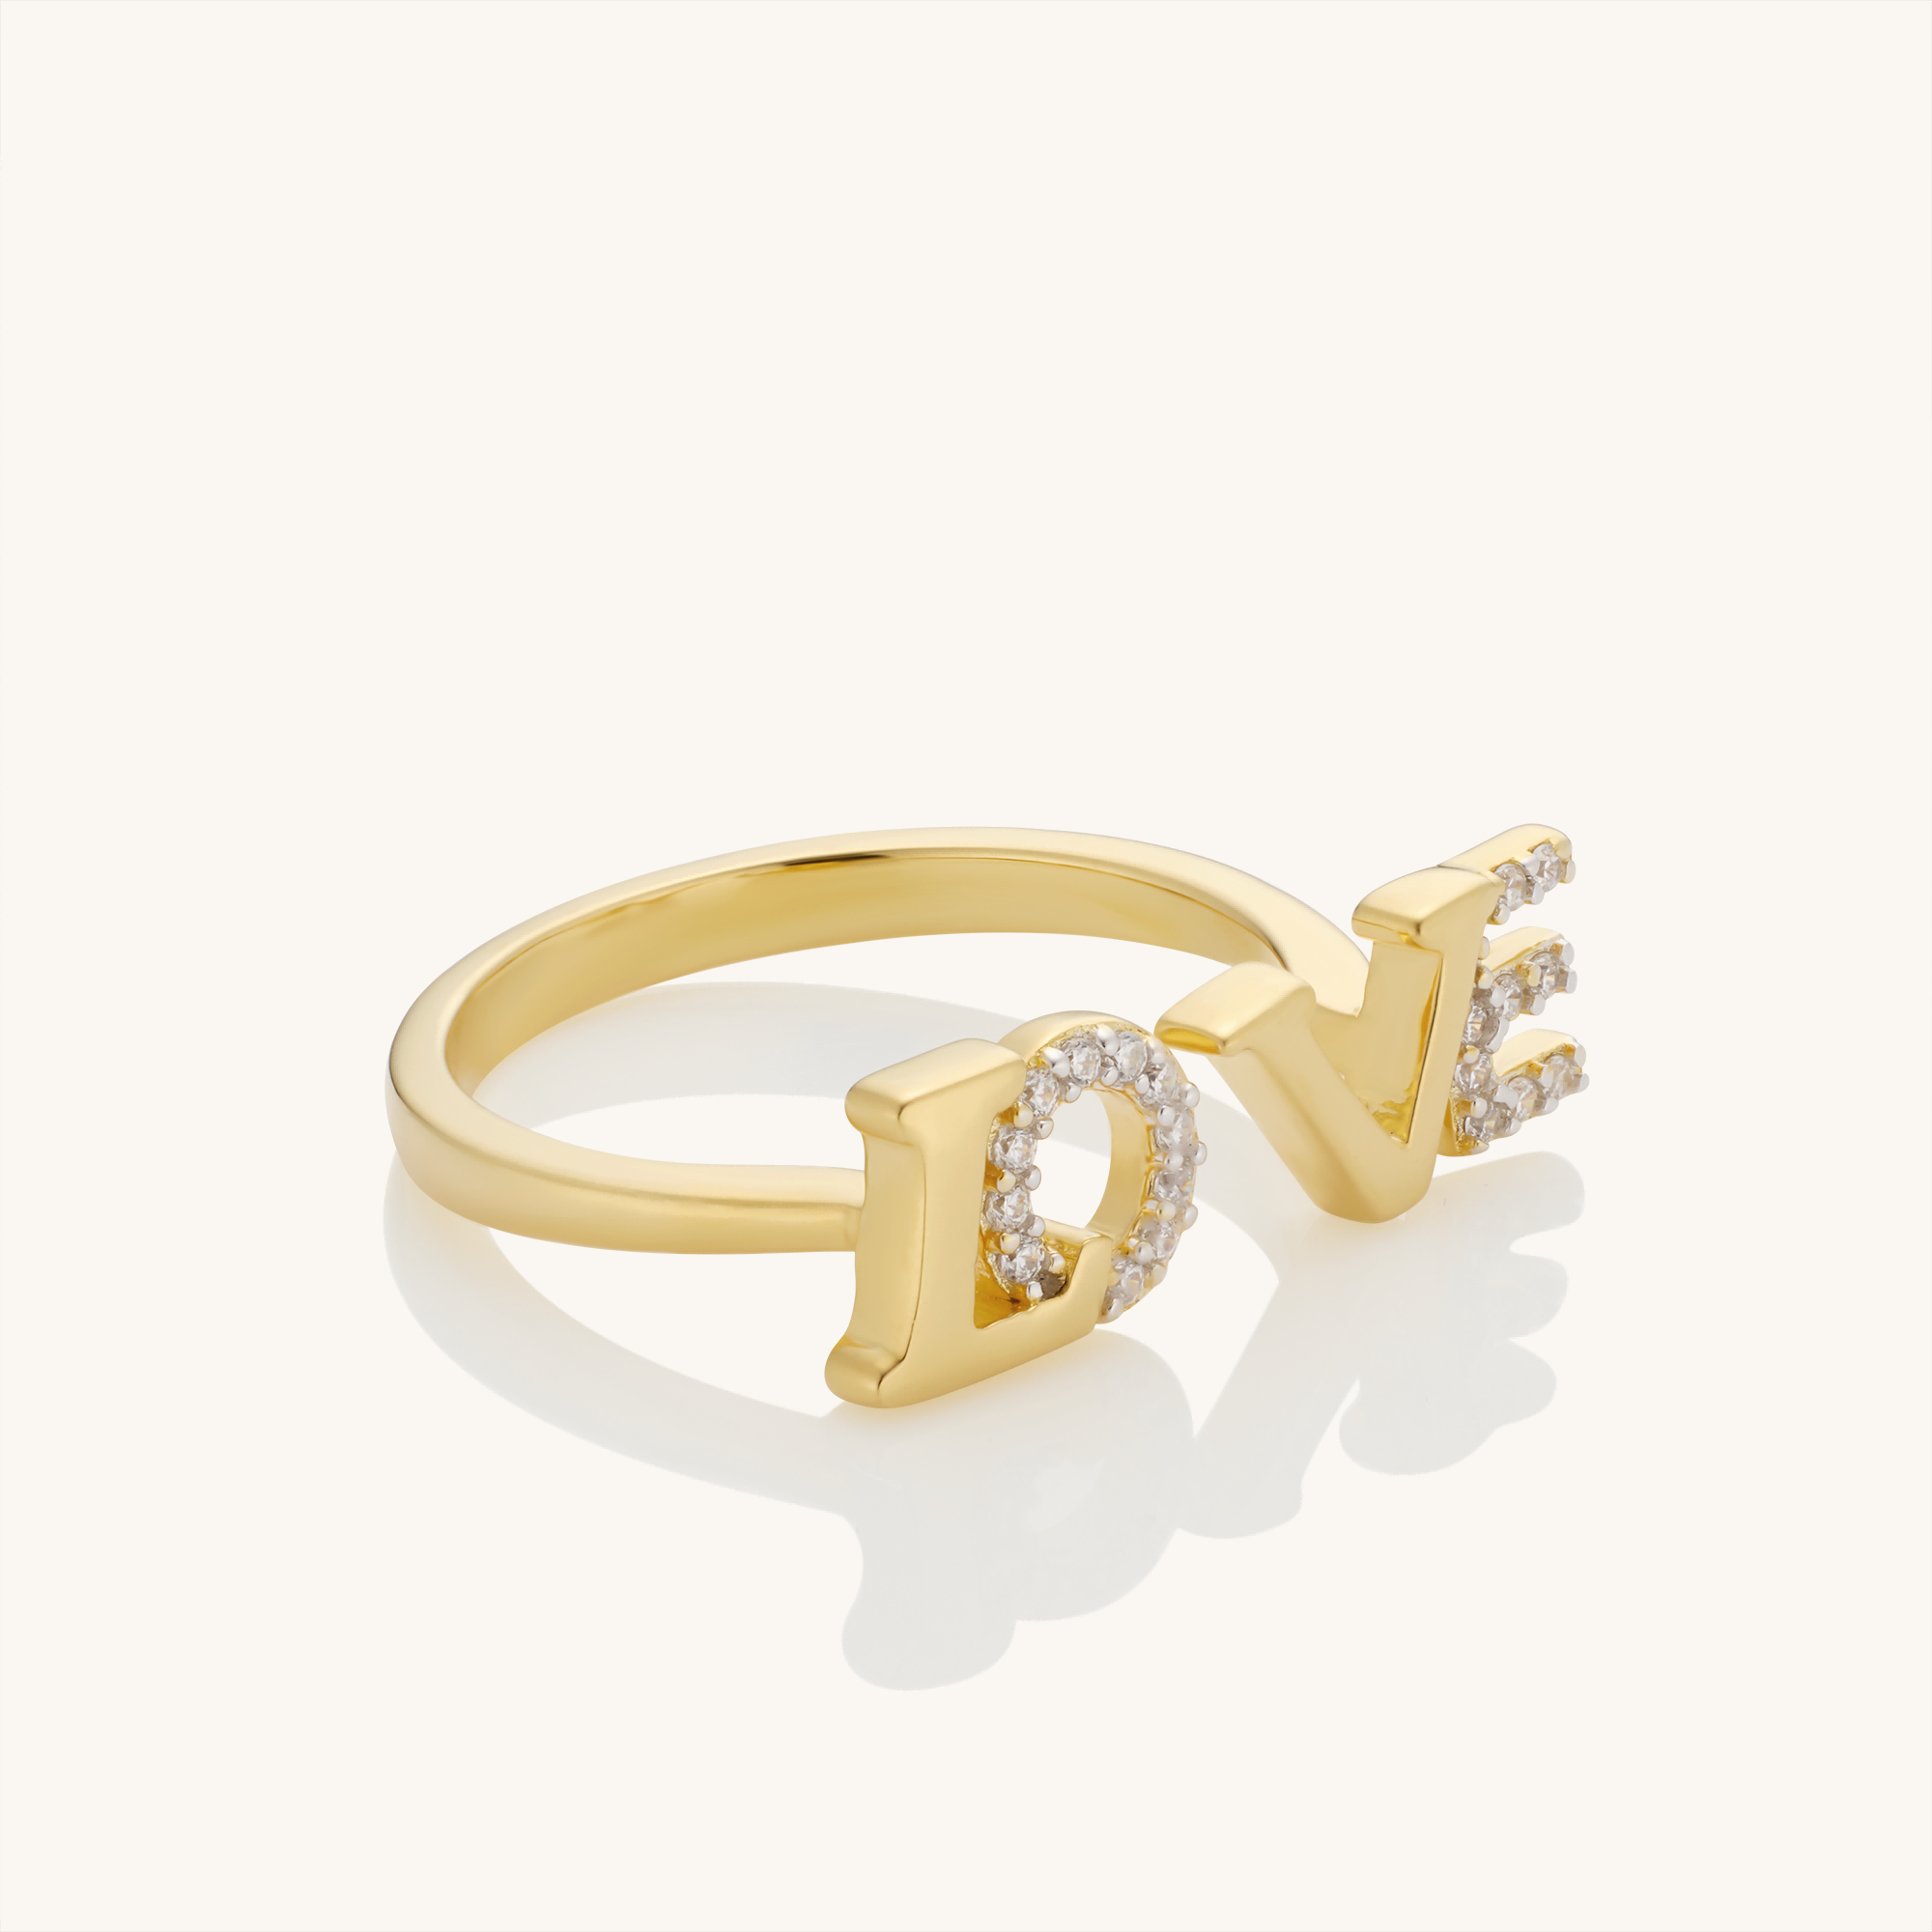 Adjustable Love Ring for Women - Kira LaLa